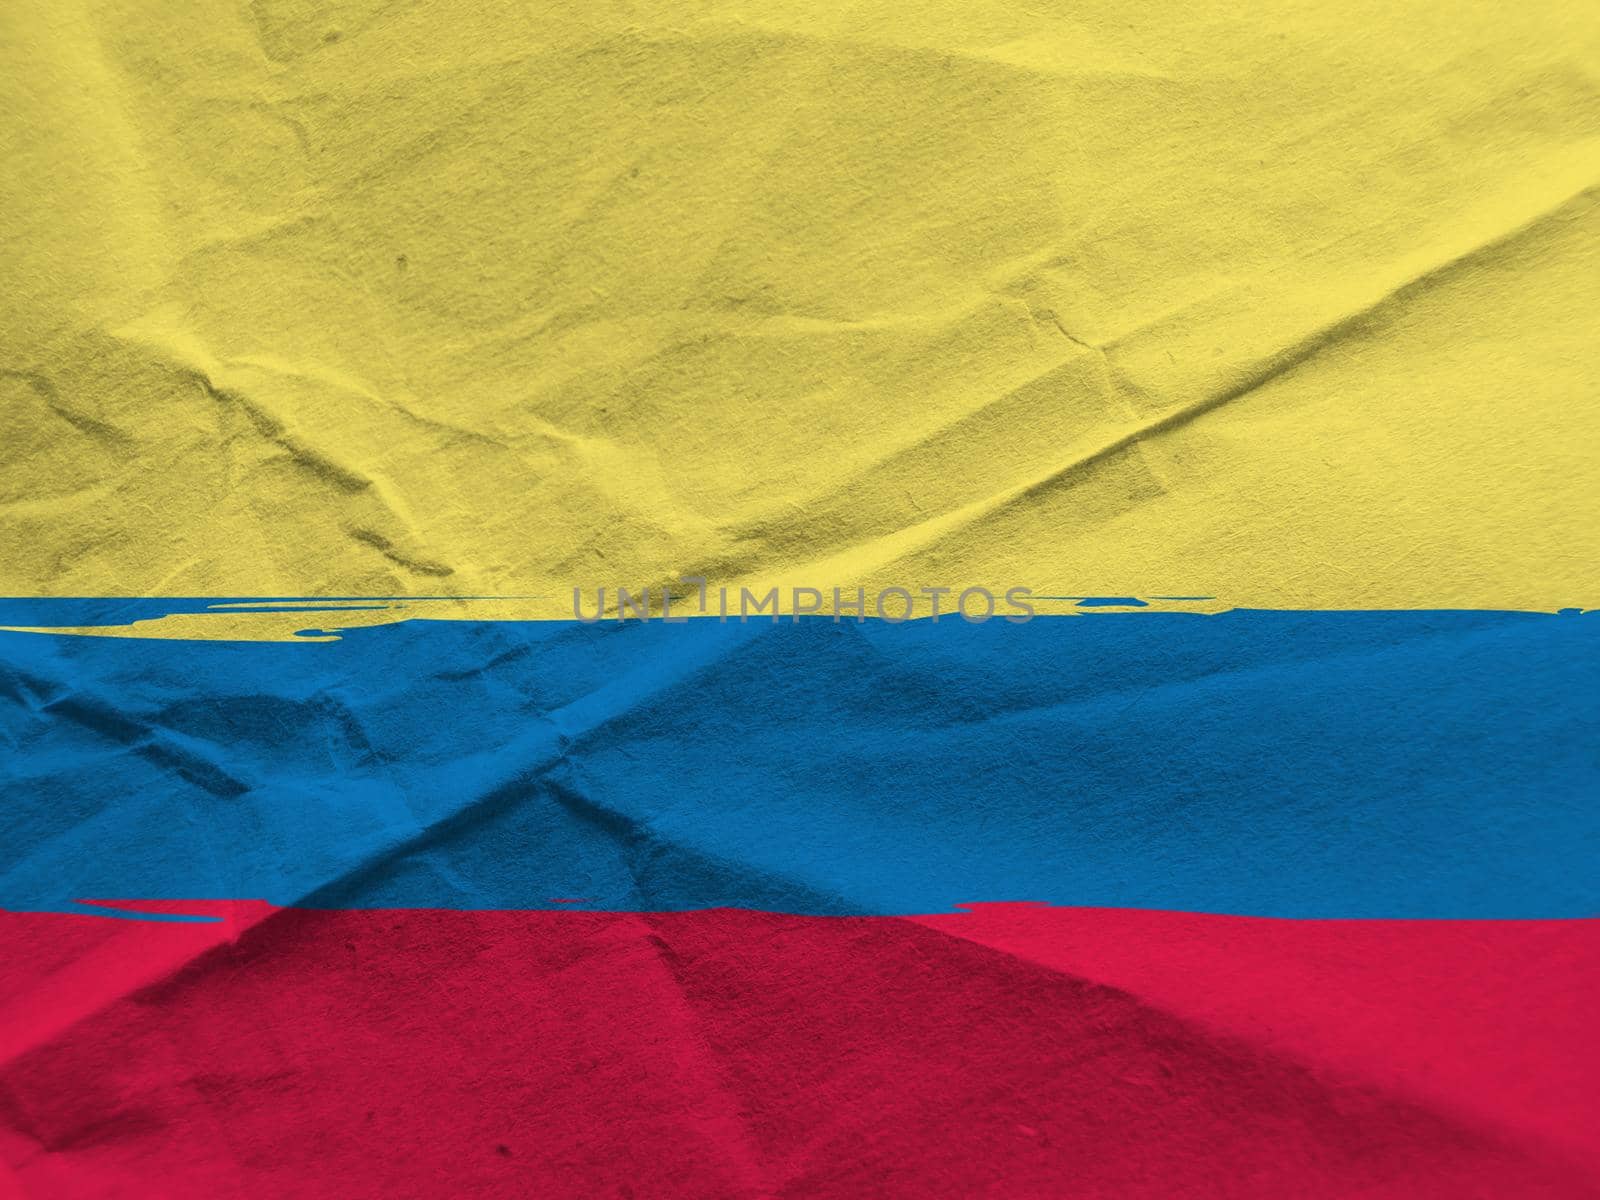 abstract ECUADORIAN flag or banner